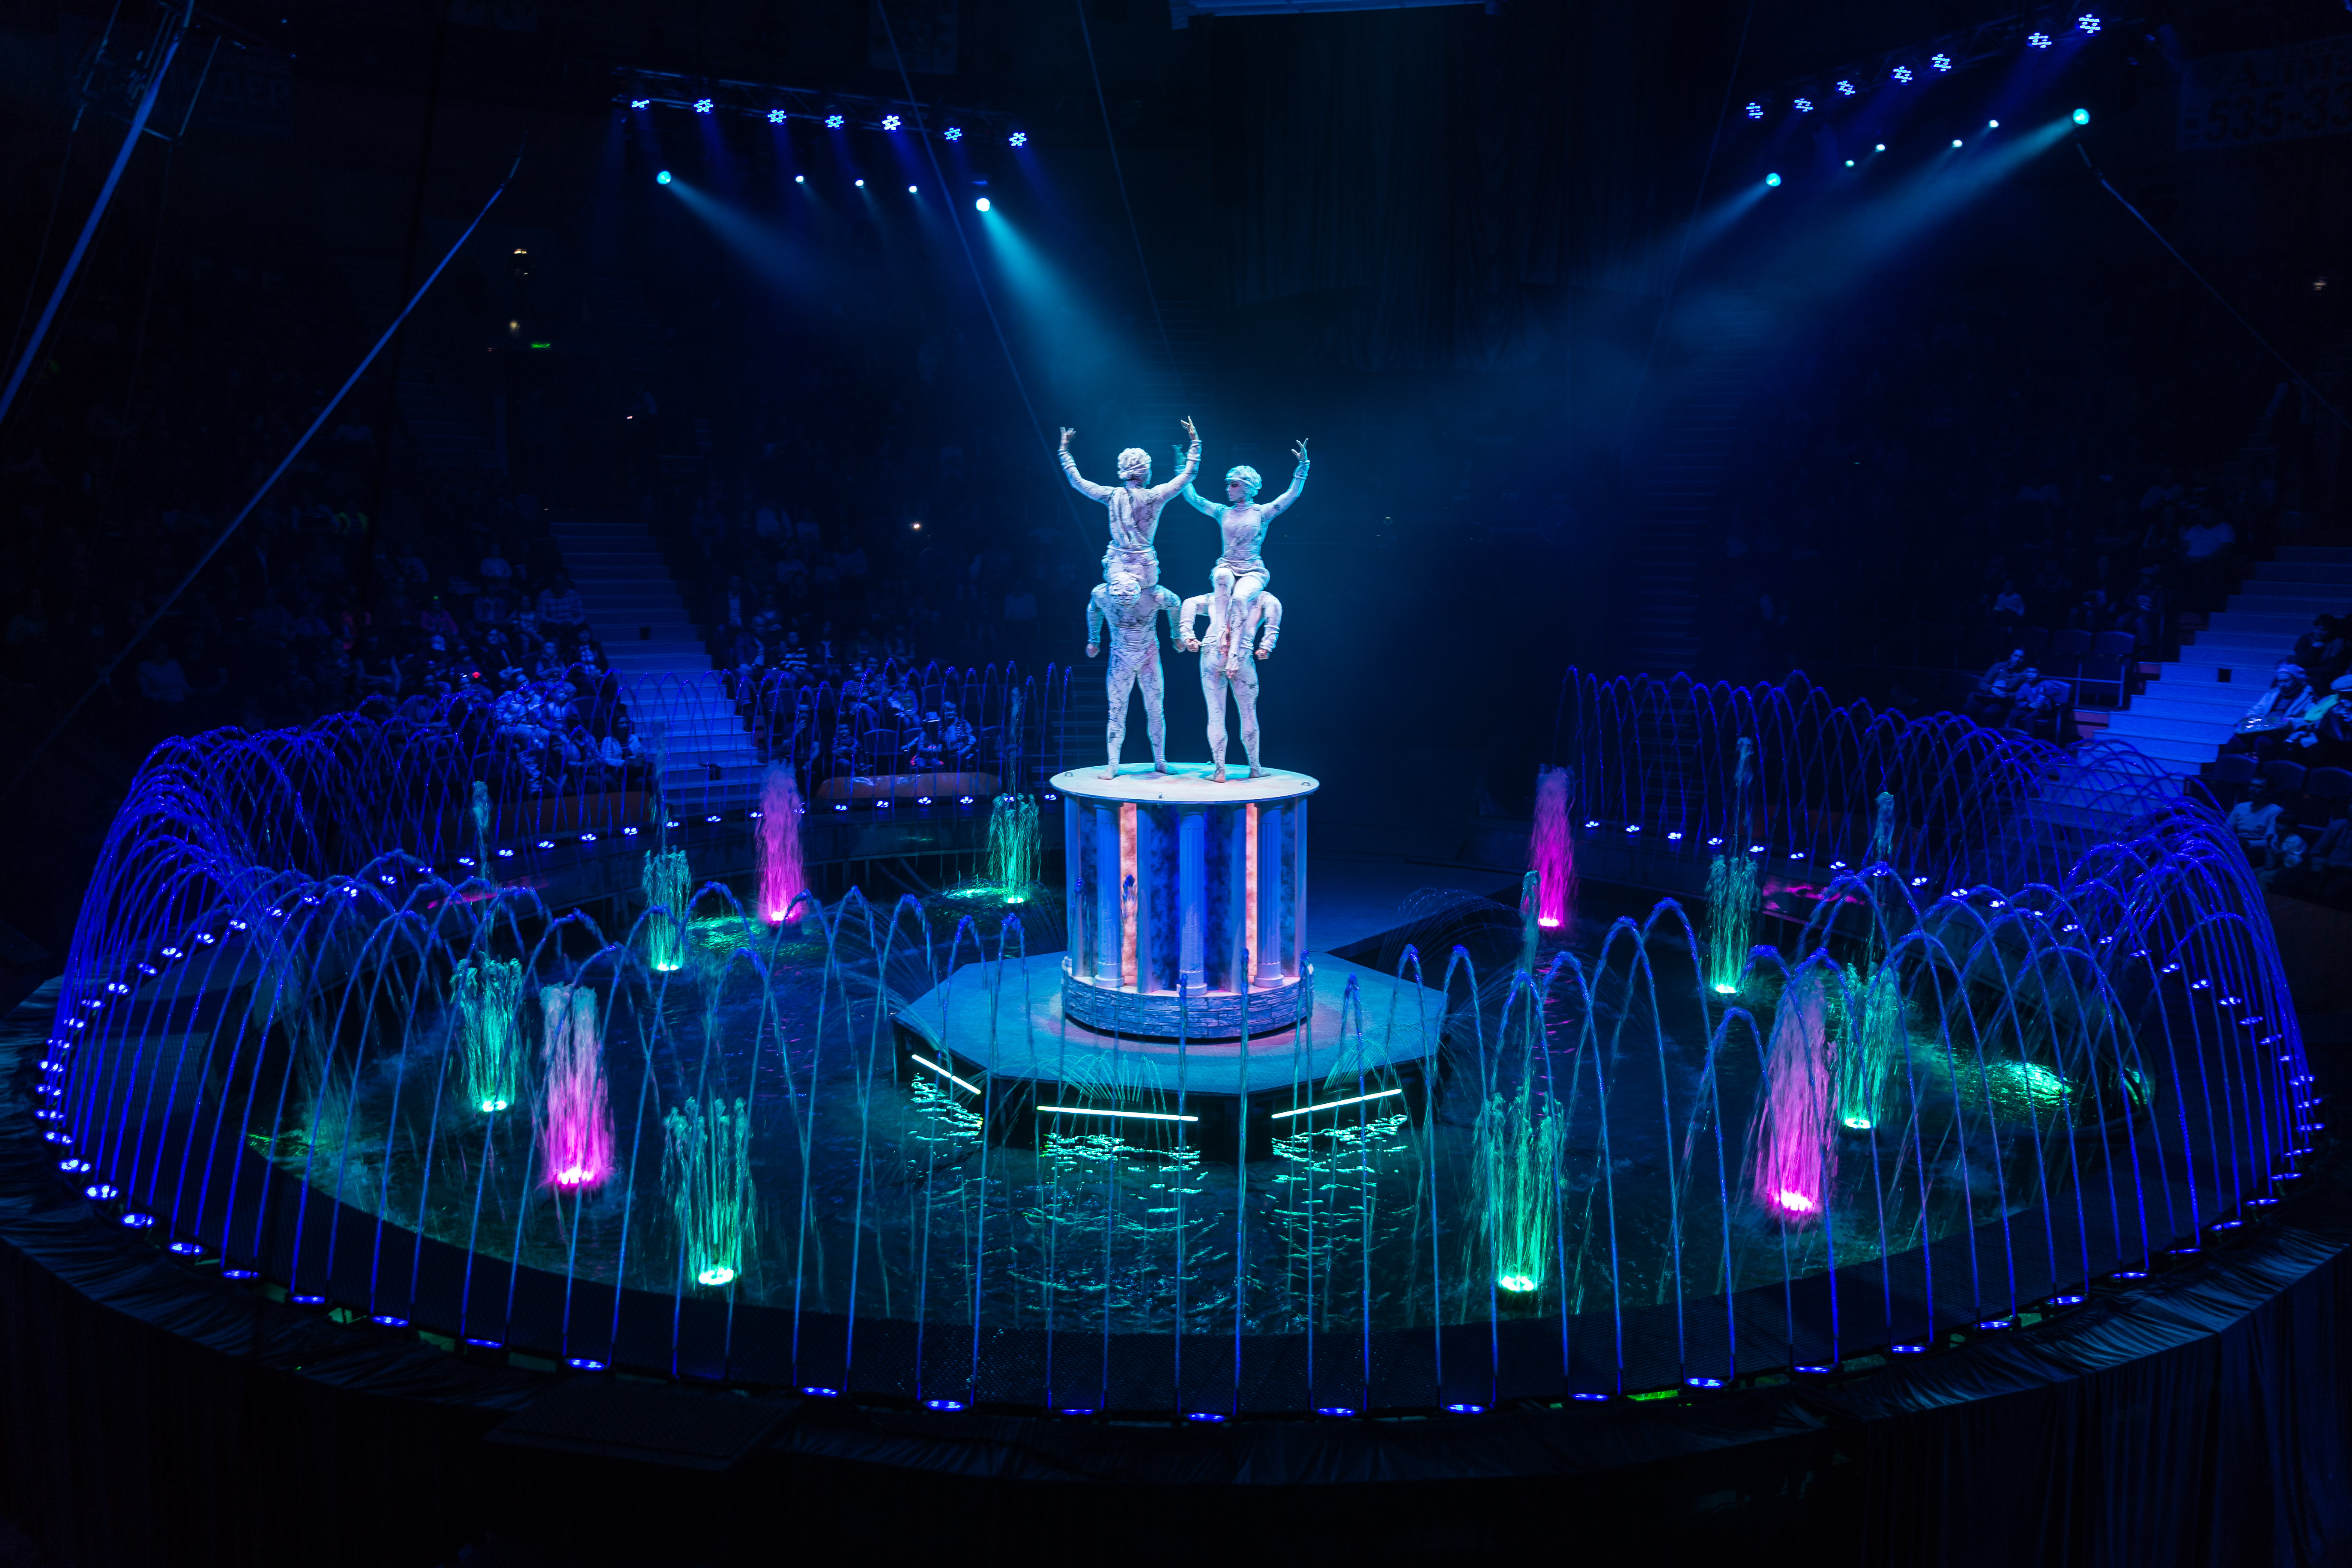  Премьера в Гомельском цирке: шоу гигантских фонтанов «Удивительный город». Будет обновлено